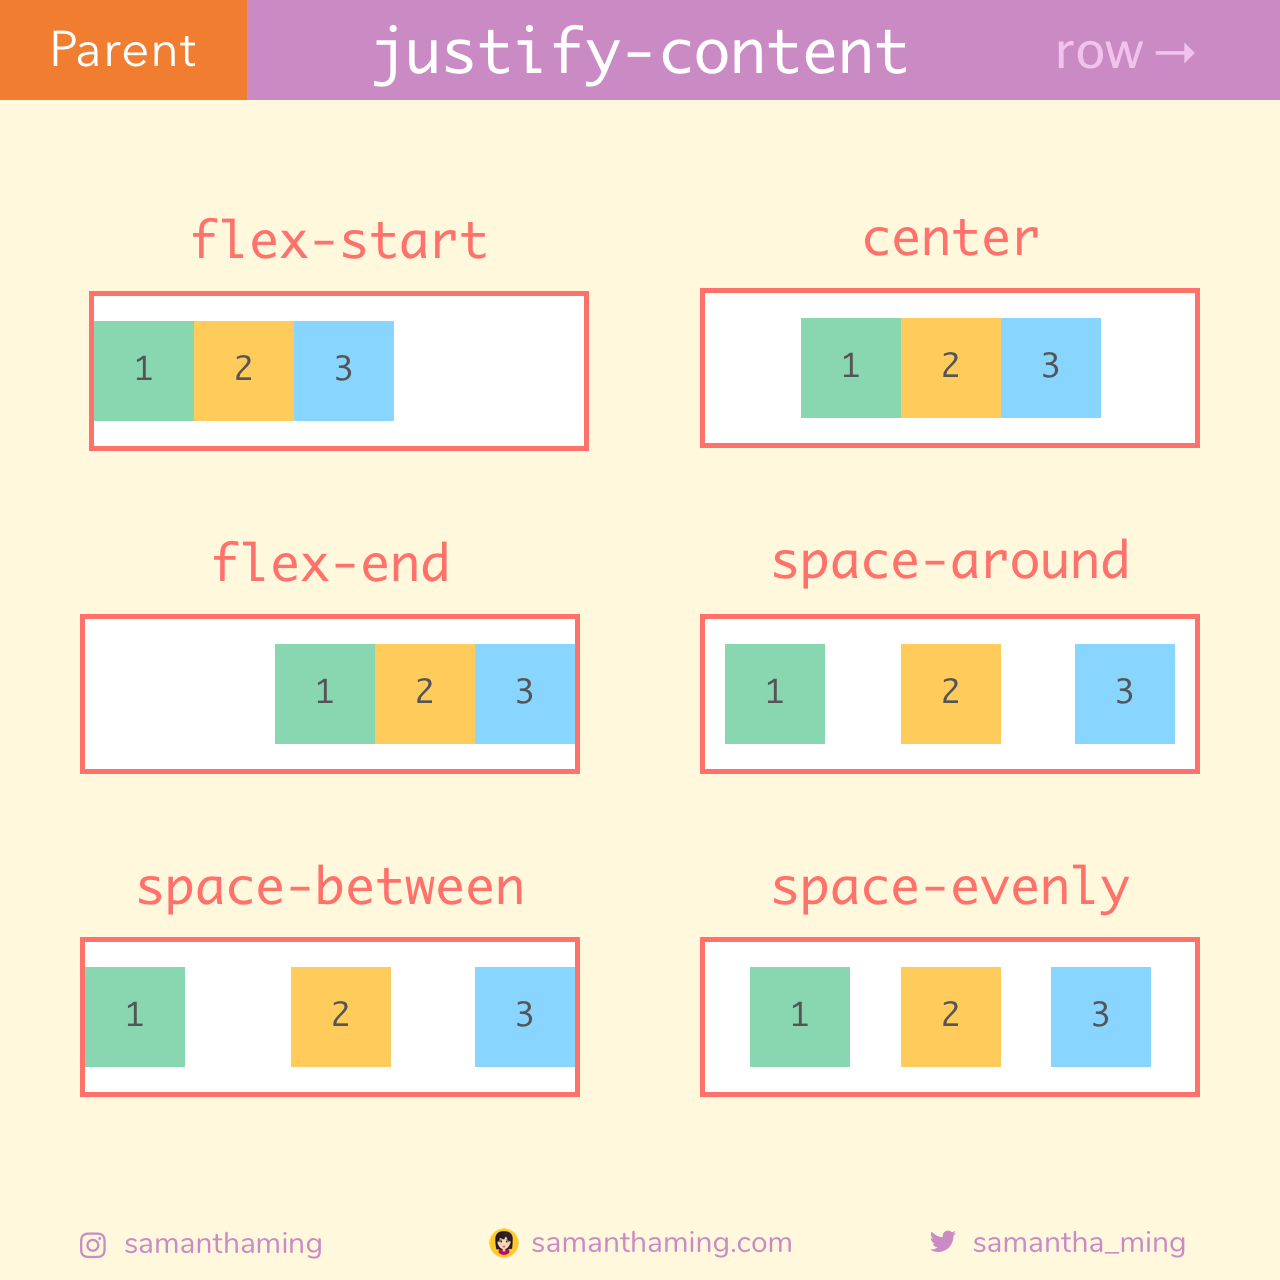 Justify-content. Flex justify-content. Justify-content: Flex-start;. Justify content space between